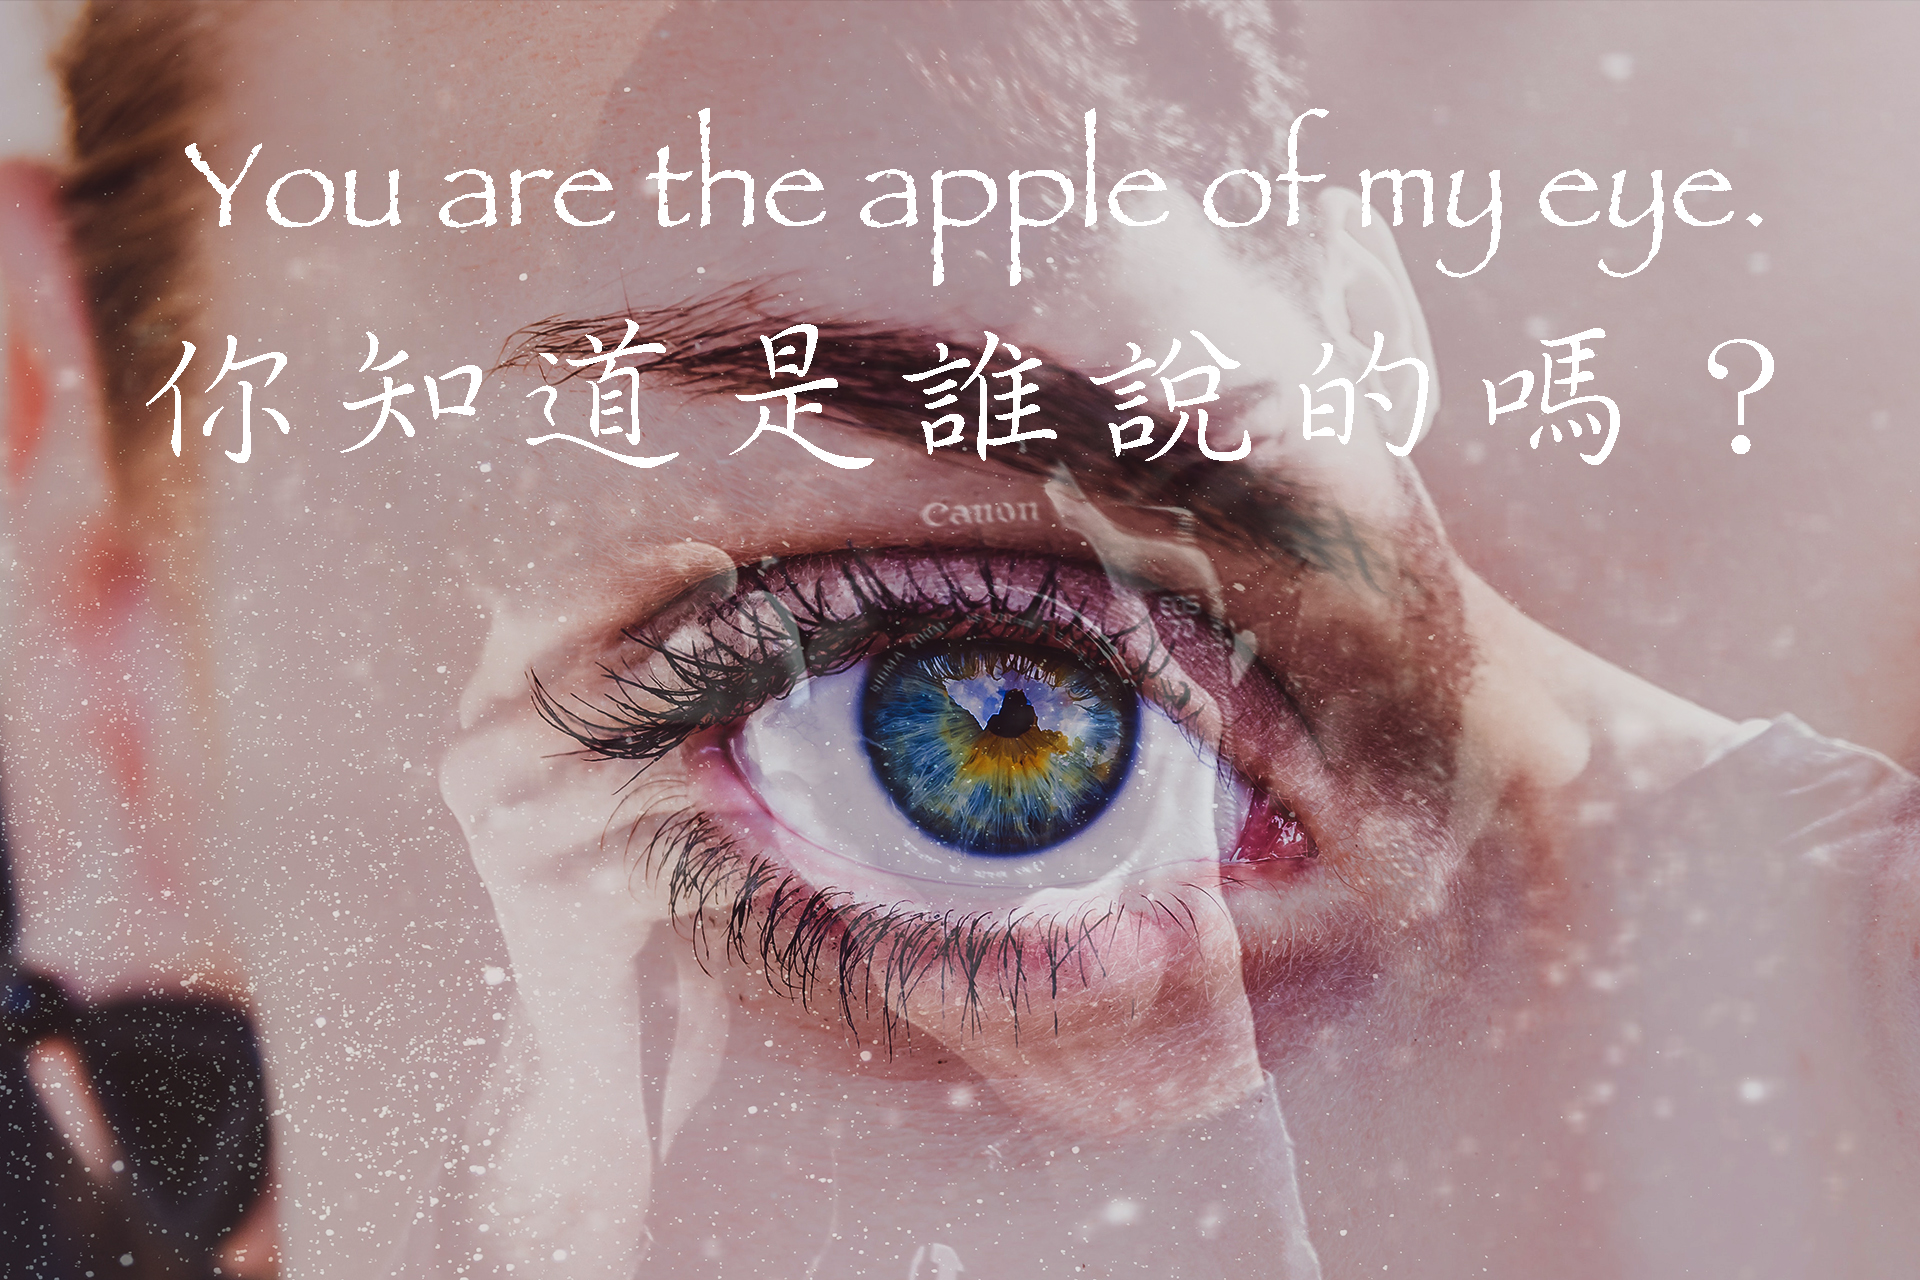 [聖經]You are the apple of my eye.你知道這句情話是誰說的嗎